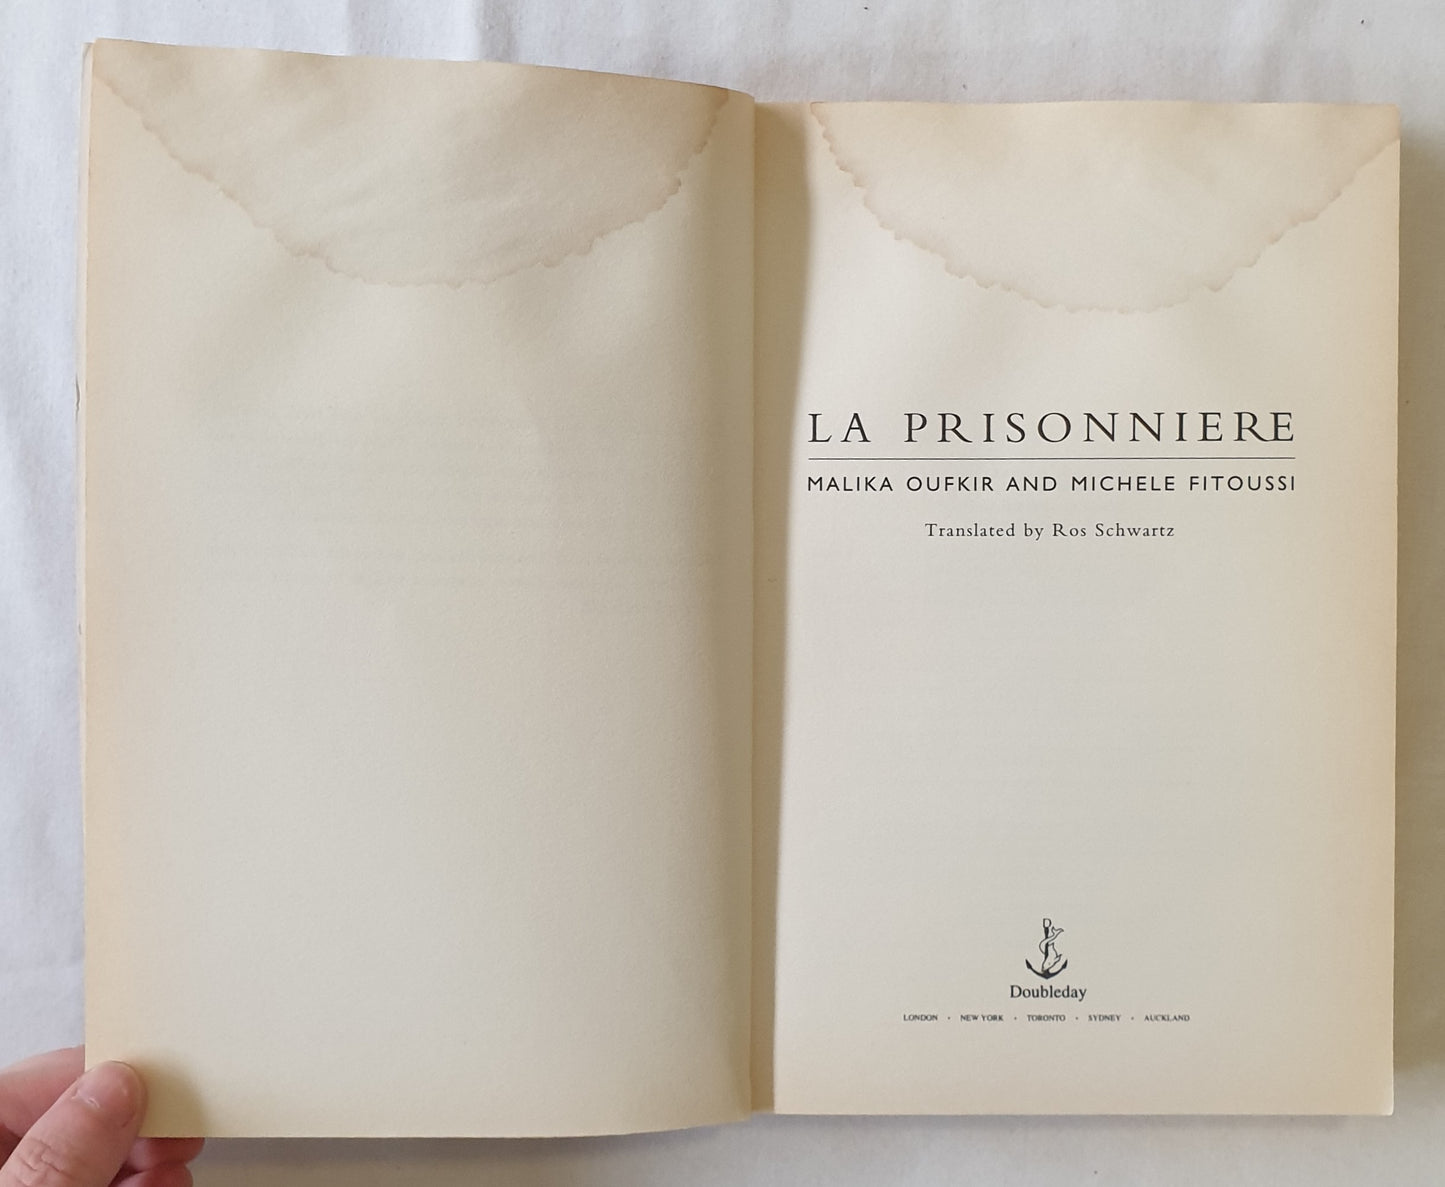 La Prisonniere by Malika Oufkir and Michele Fitoussi